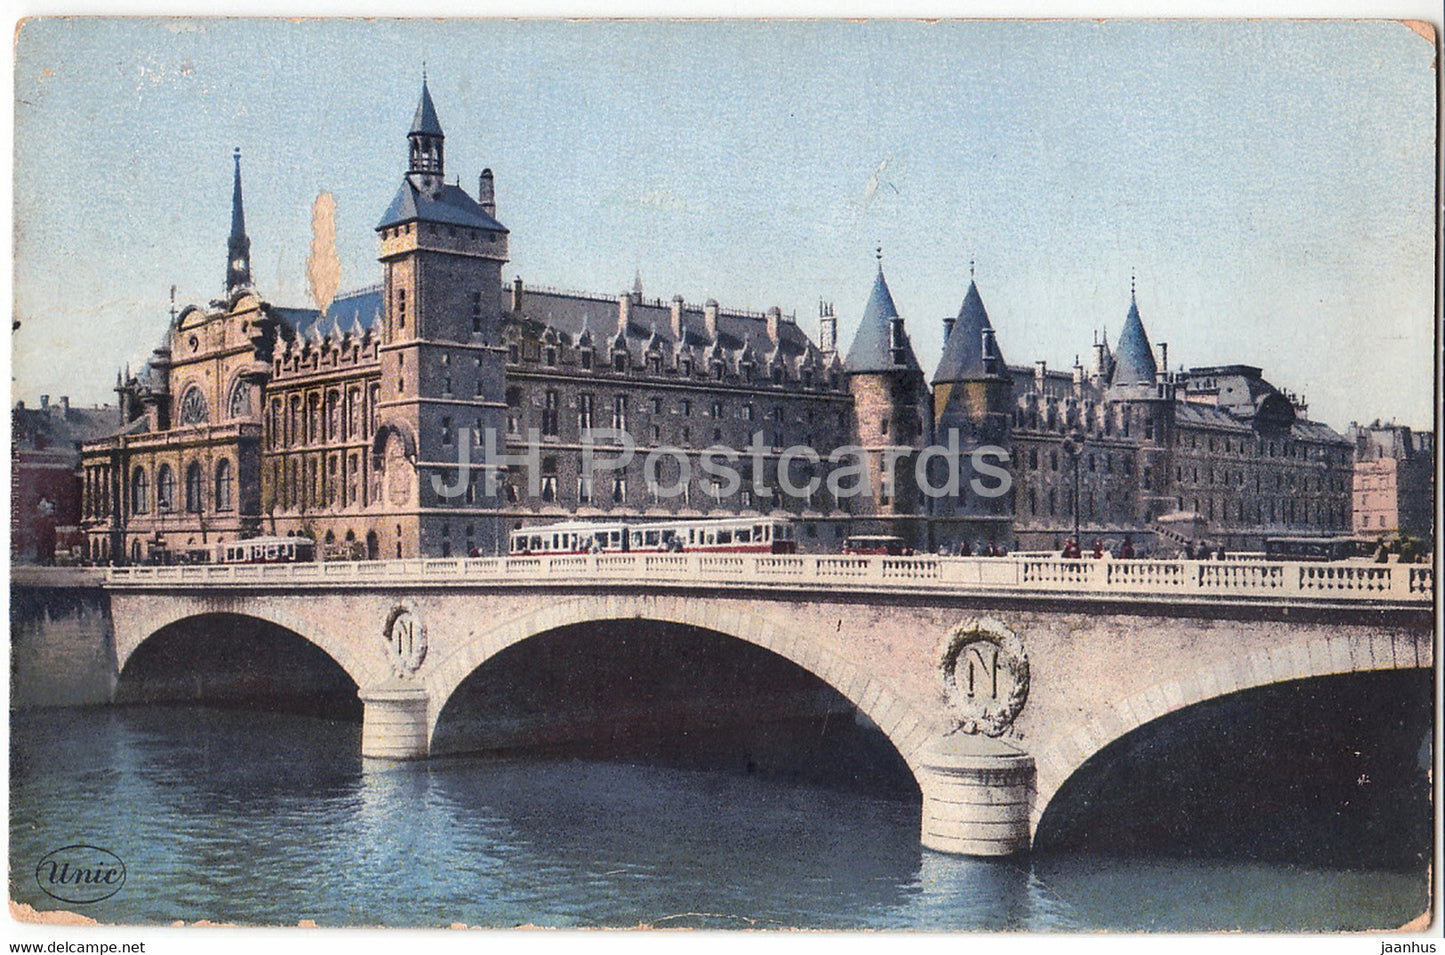 Paris - Le Pont au change et la Conciergerie - tram - bridge - 26 - old postcard - 1939 - France - used - JH Postcards